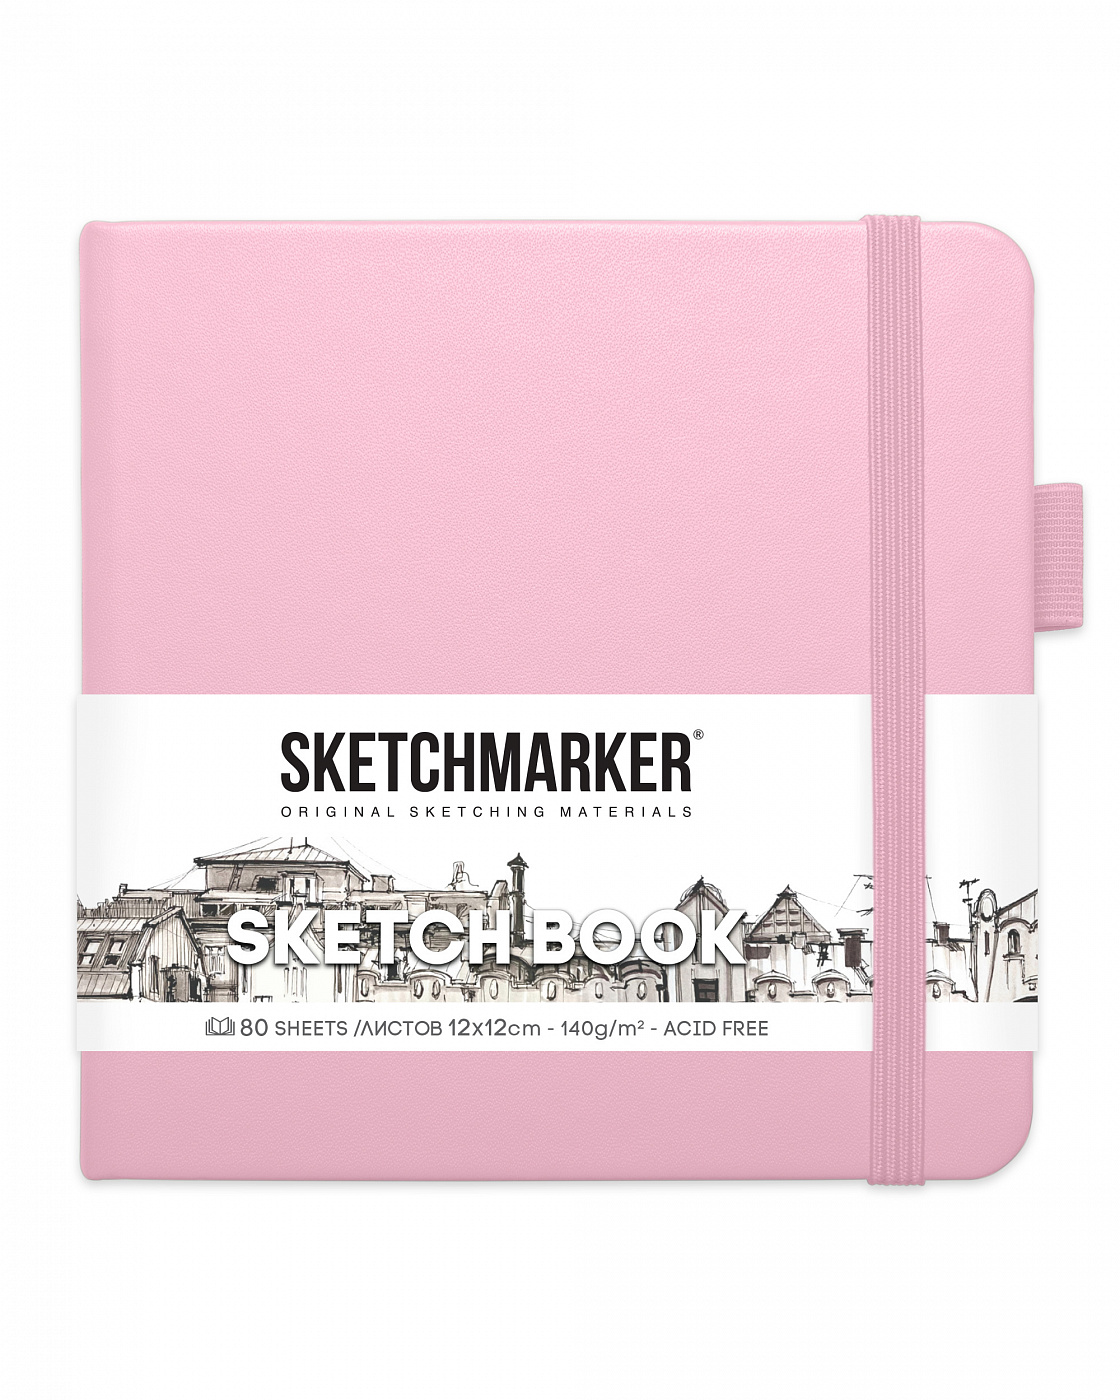 Блокнот для зарисовок Sketchmarker 12х12 см 80 л 140 г, твердая обложка Розовый блокнот для зарисовок sketchmarker 12х12 см 80 л 140 г твердая обложка розовый